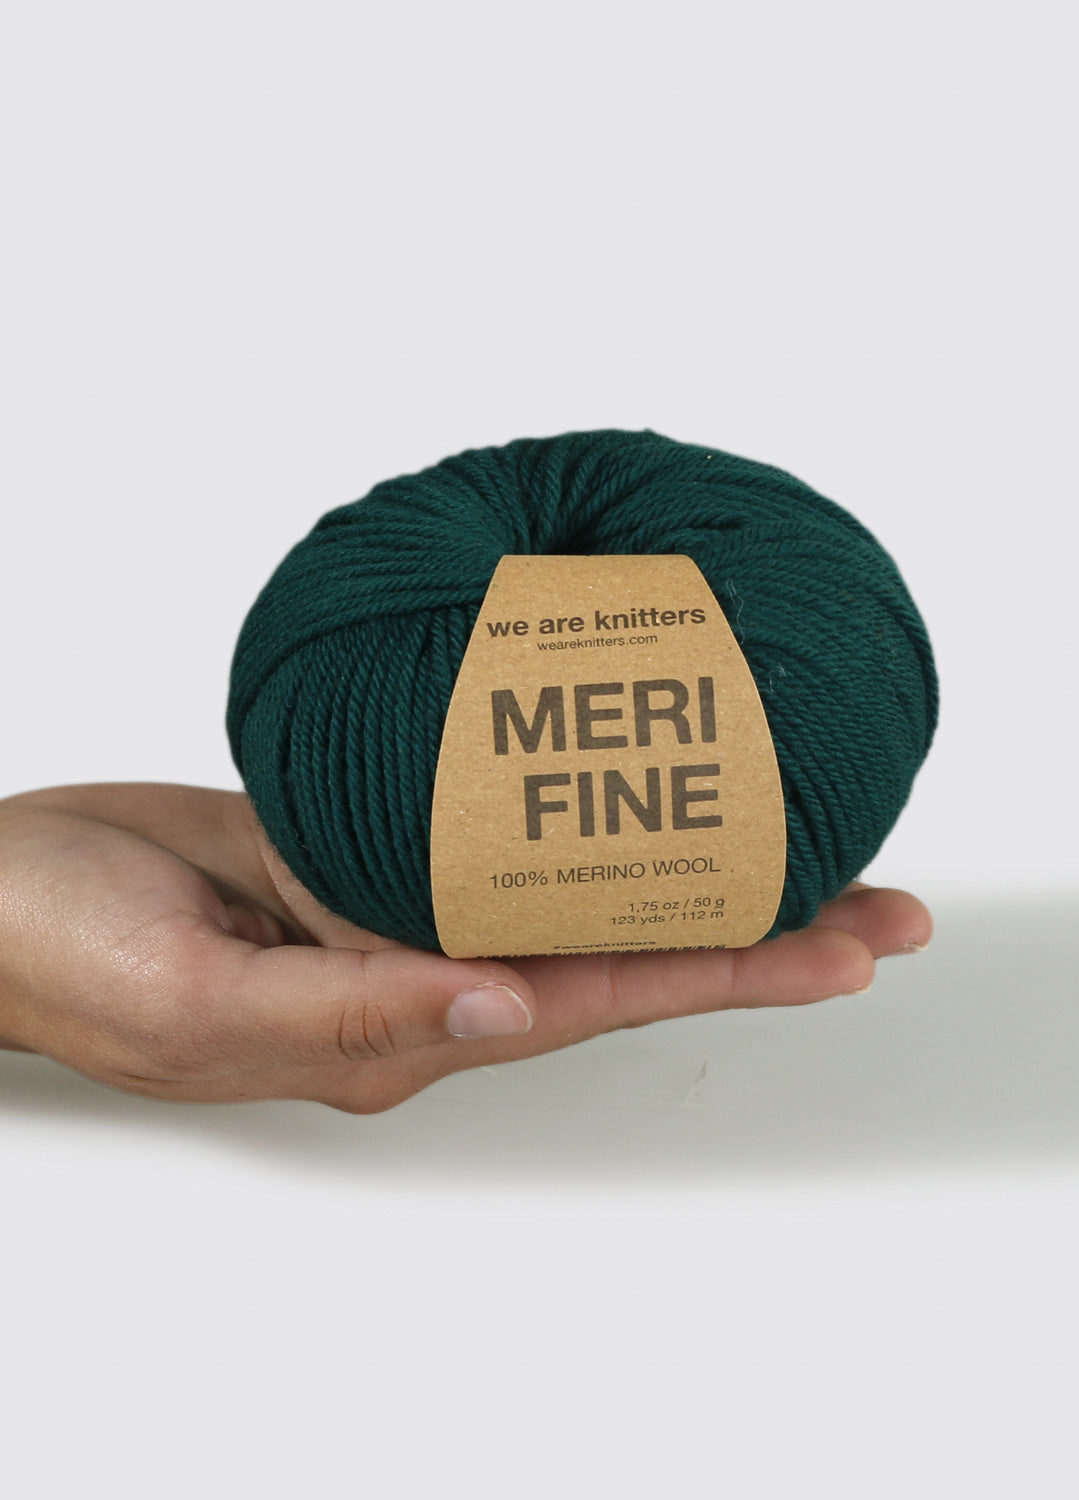 10 Pack of Merifine Yarn Balls